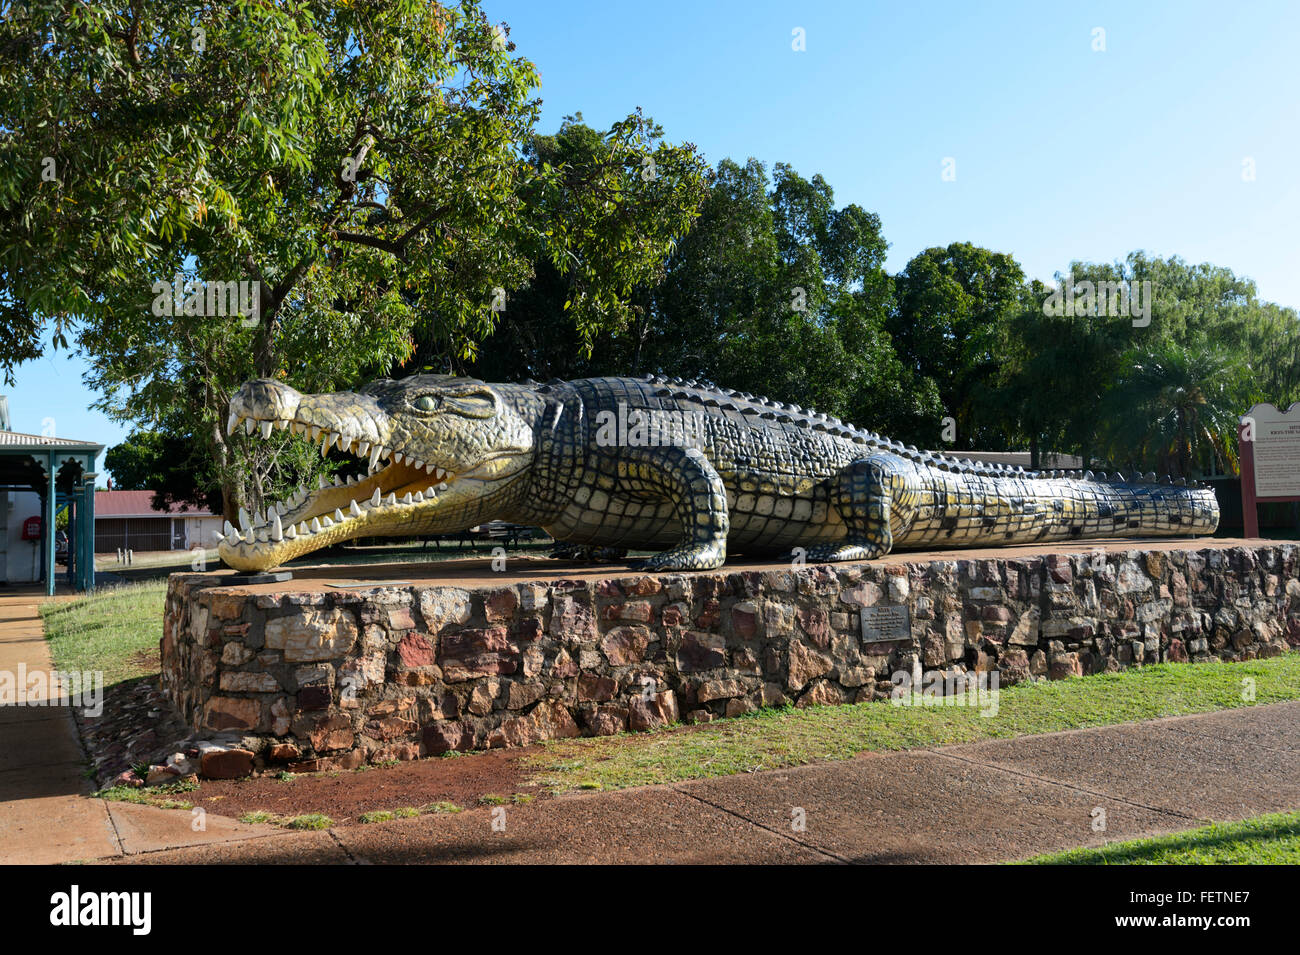 Krys, le Crocodile à Normanton, Queensland, Australie, est un modèle à taille réelle (8.6m) de l'Australie a connu le plus grand crocodile, whi Banque D'Images